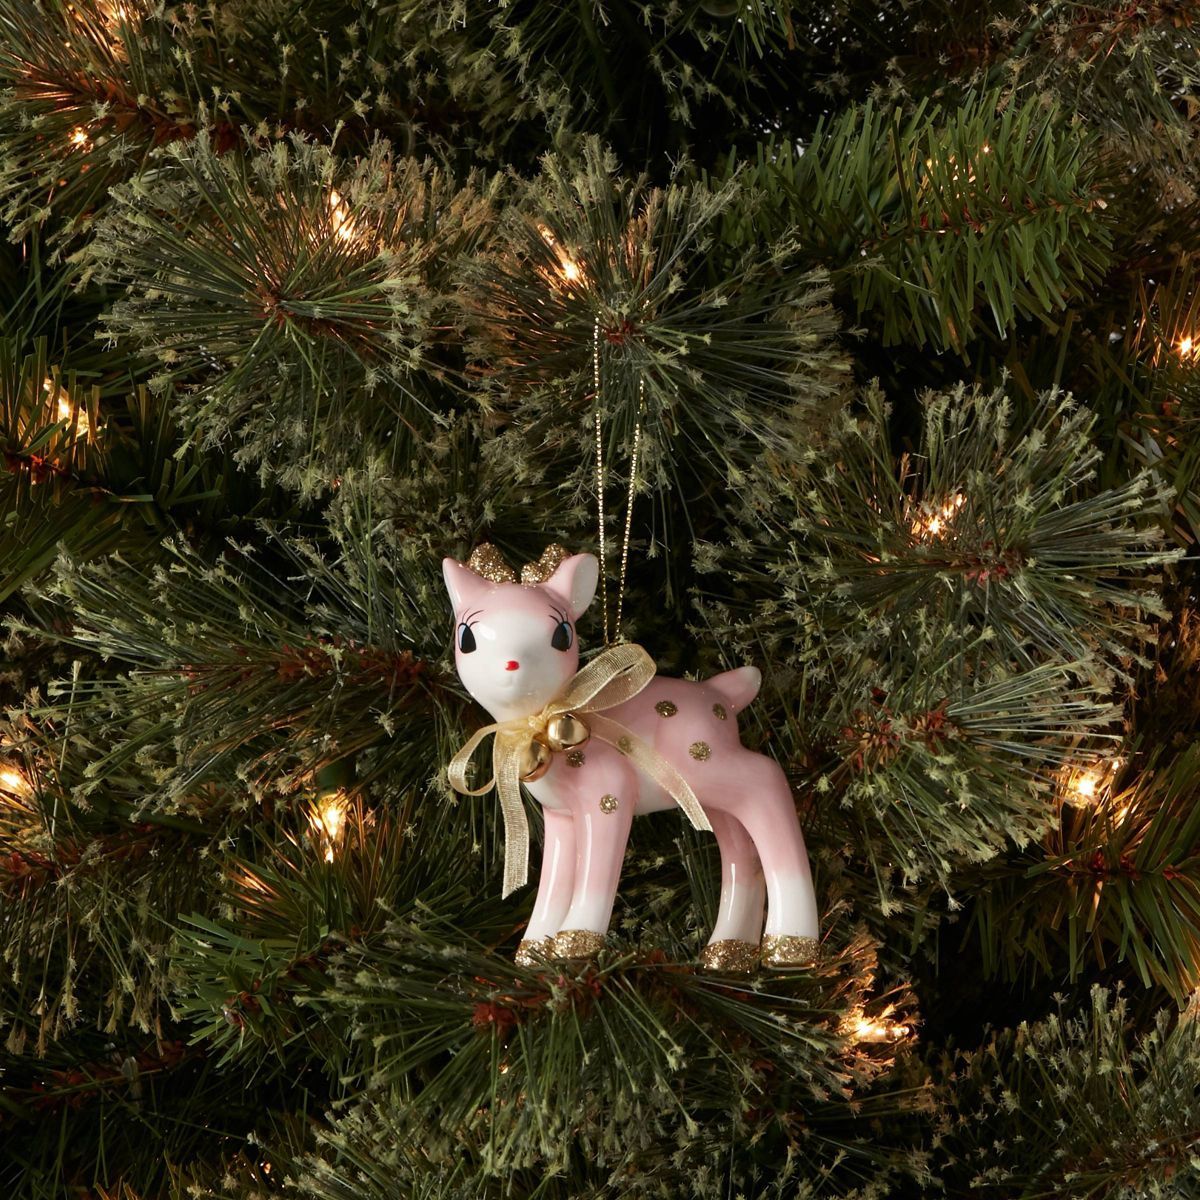 Retro Deer Christmas Tree Ornament Pink/Gold - Wondershop™ | Target